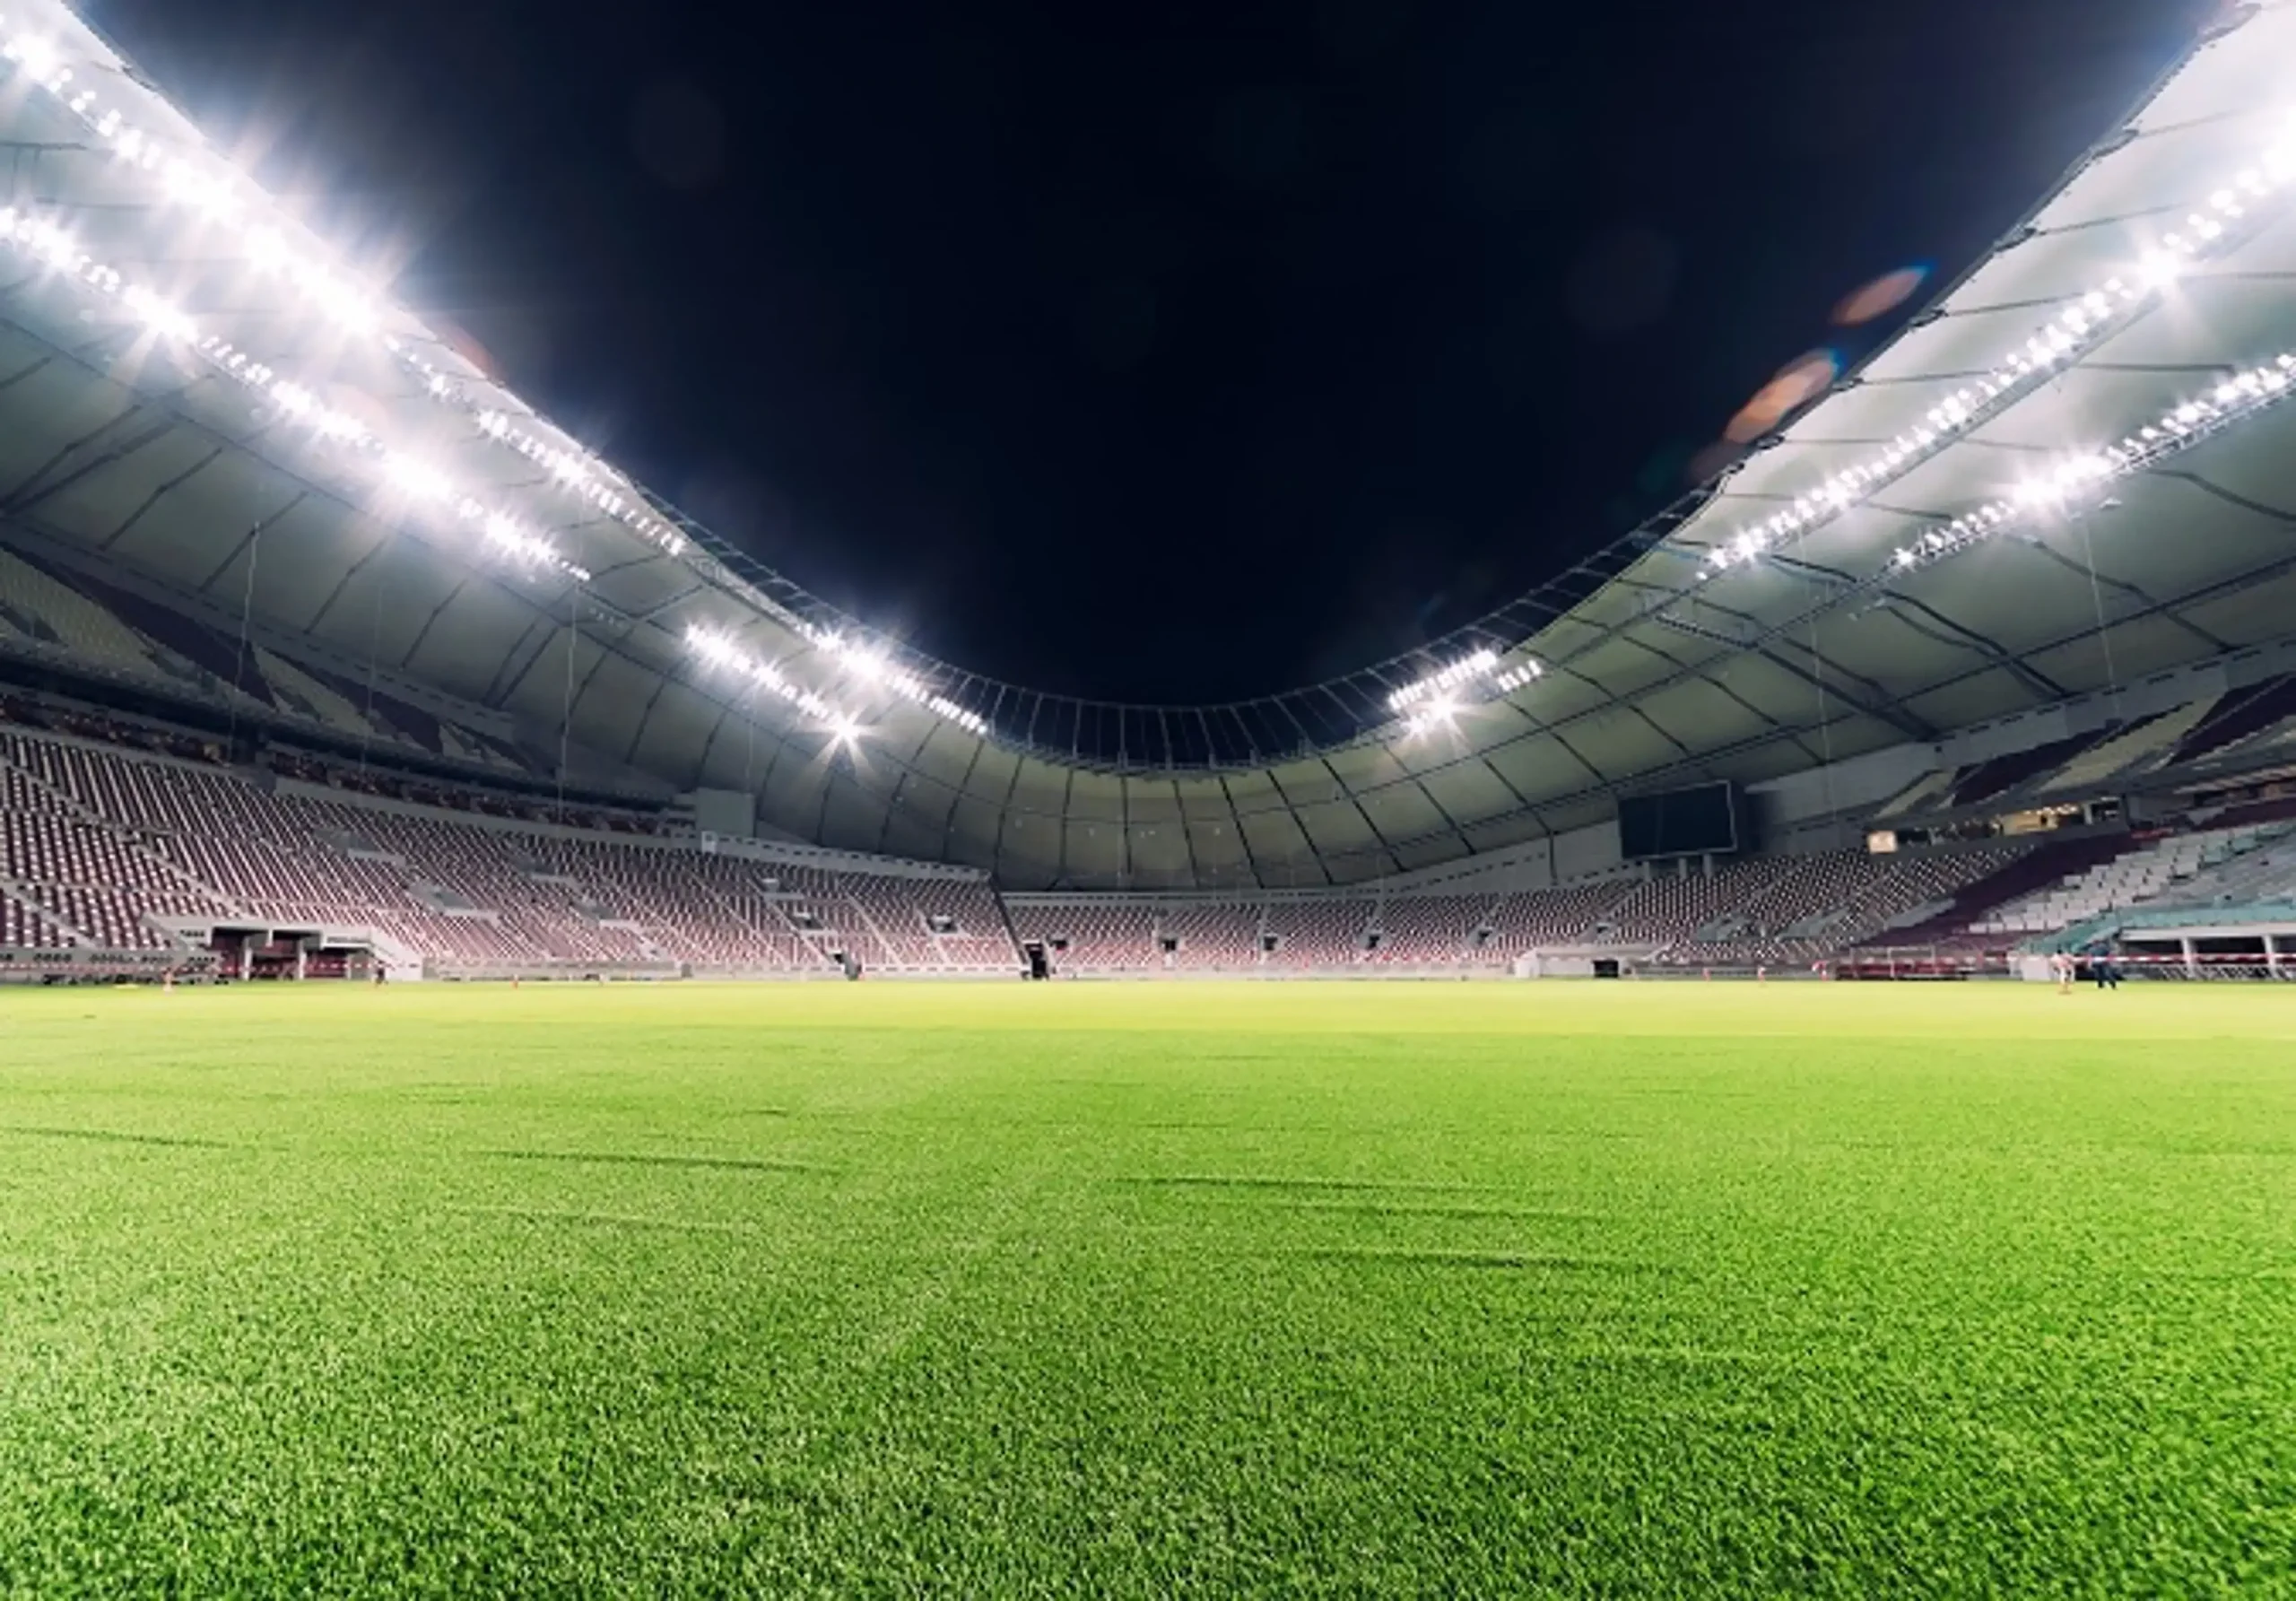 Sân vận động quốc tế Khalifa – Biểu tượng Thể thao và Kiến trúc của Qatar